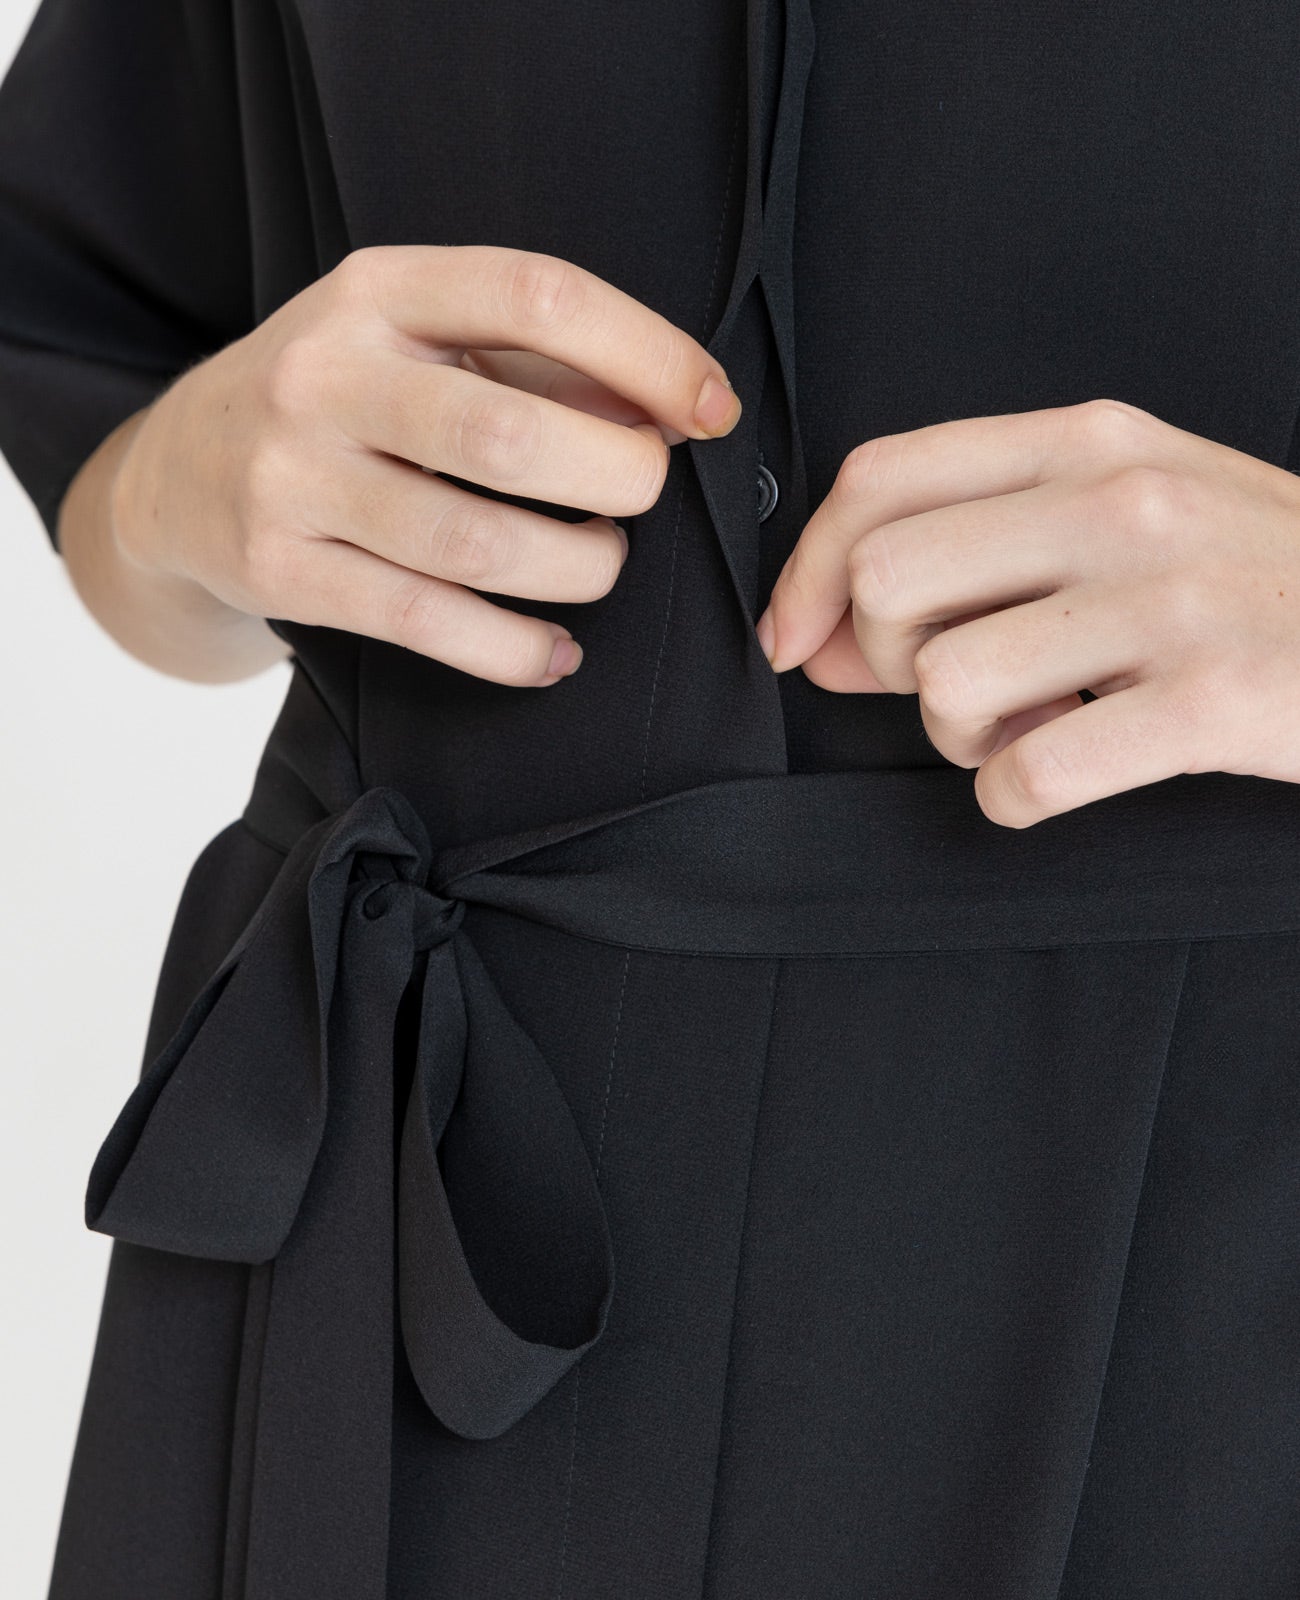 Silk V-neck Shirt Dress in Black | GRANA #color_black